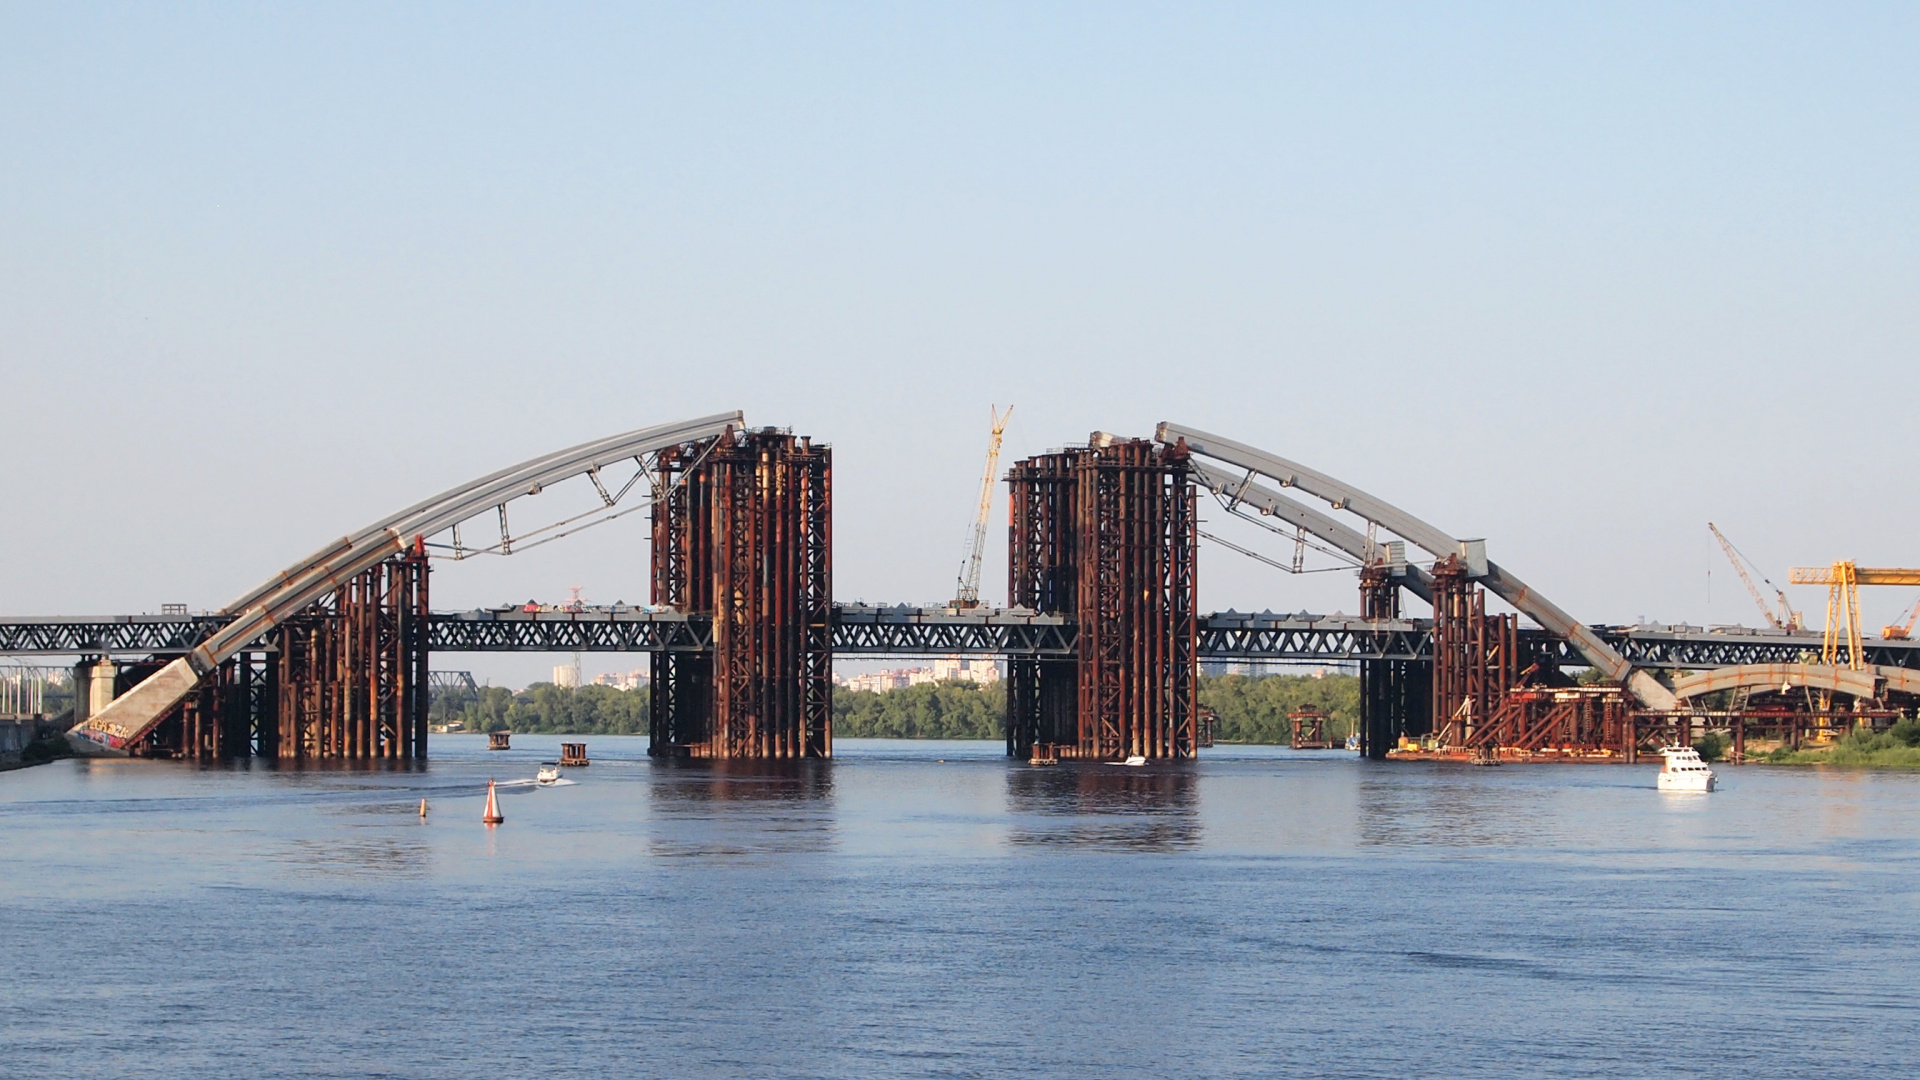 建设, 悬臂桥, 桁架桥, 工程, 拱桥 壁纸 1920x1080 允许